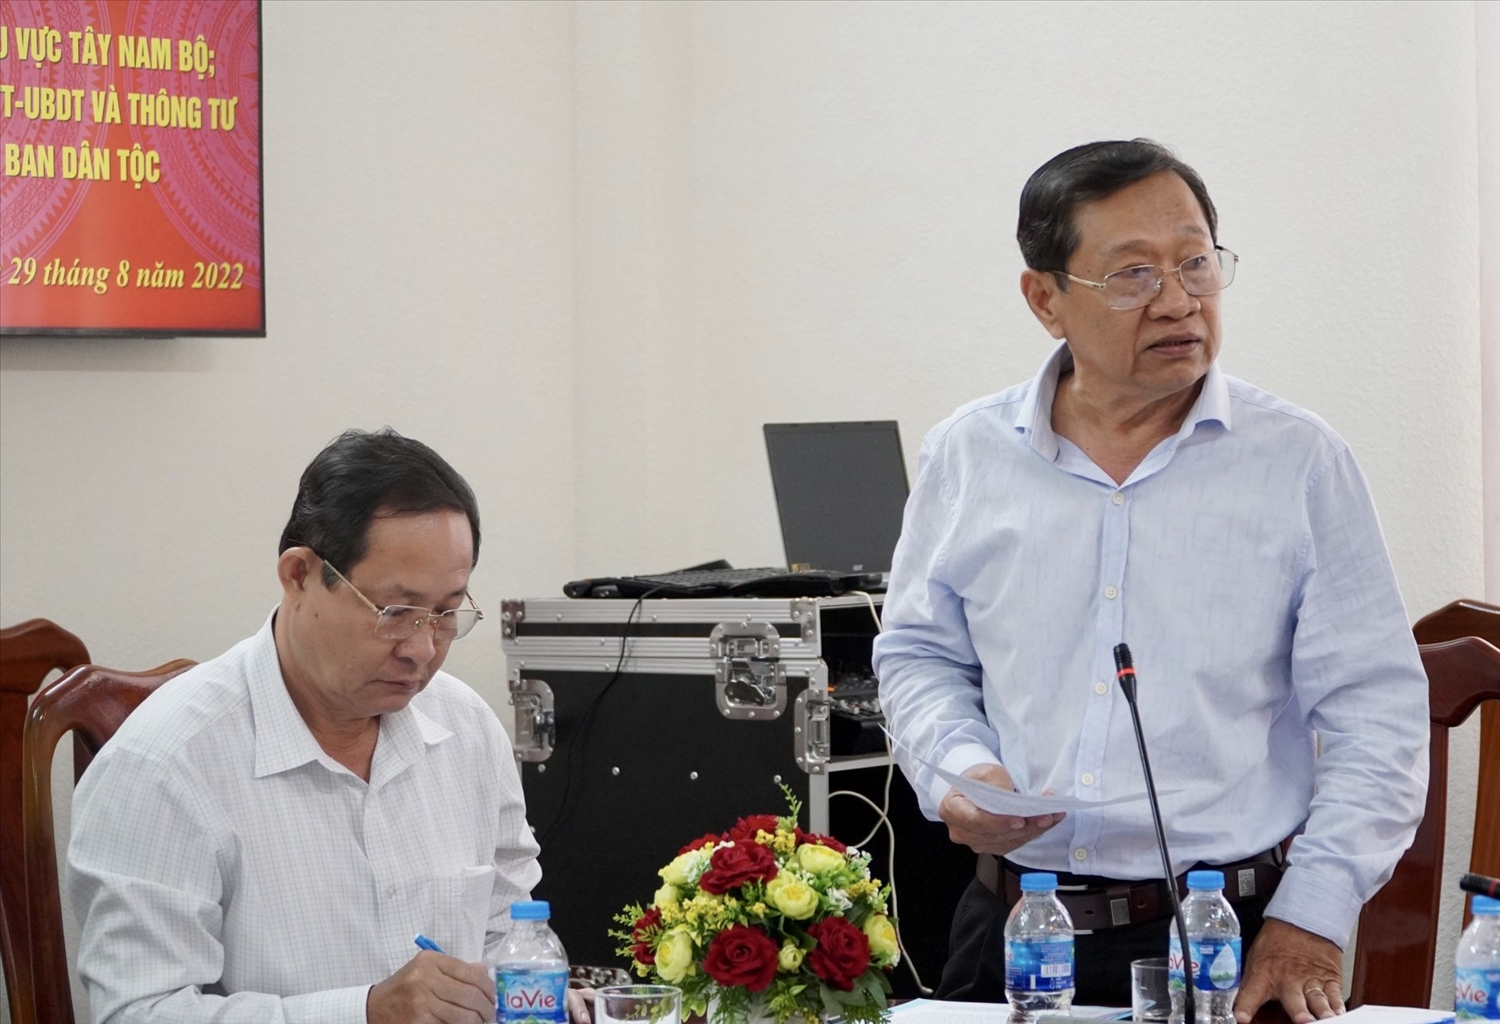 Ông Men Pho Ly - Trưởng Ban Dân tộc tỉnh An Giang phát biểu tại Hội nghị